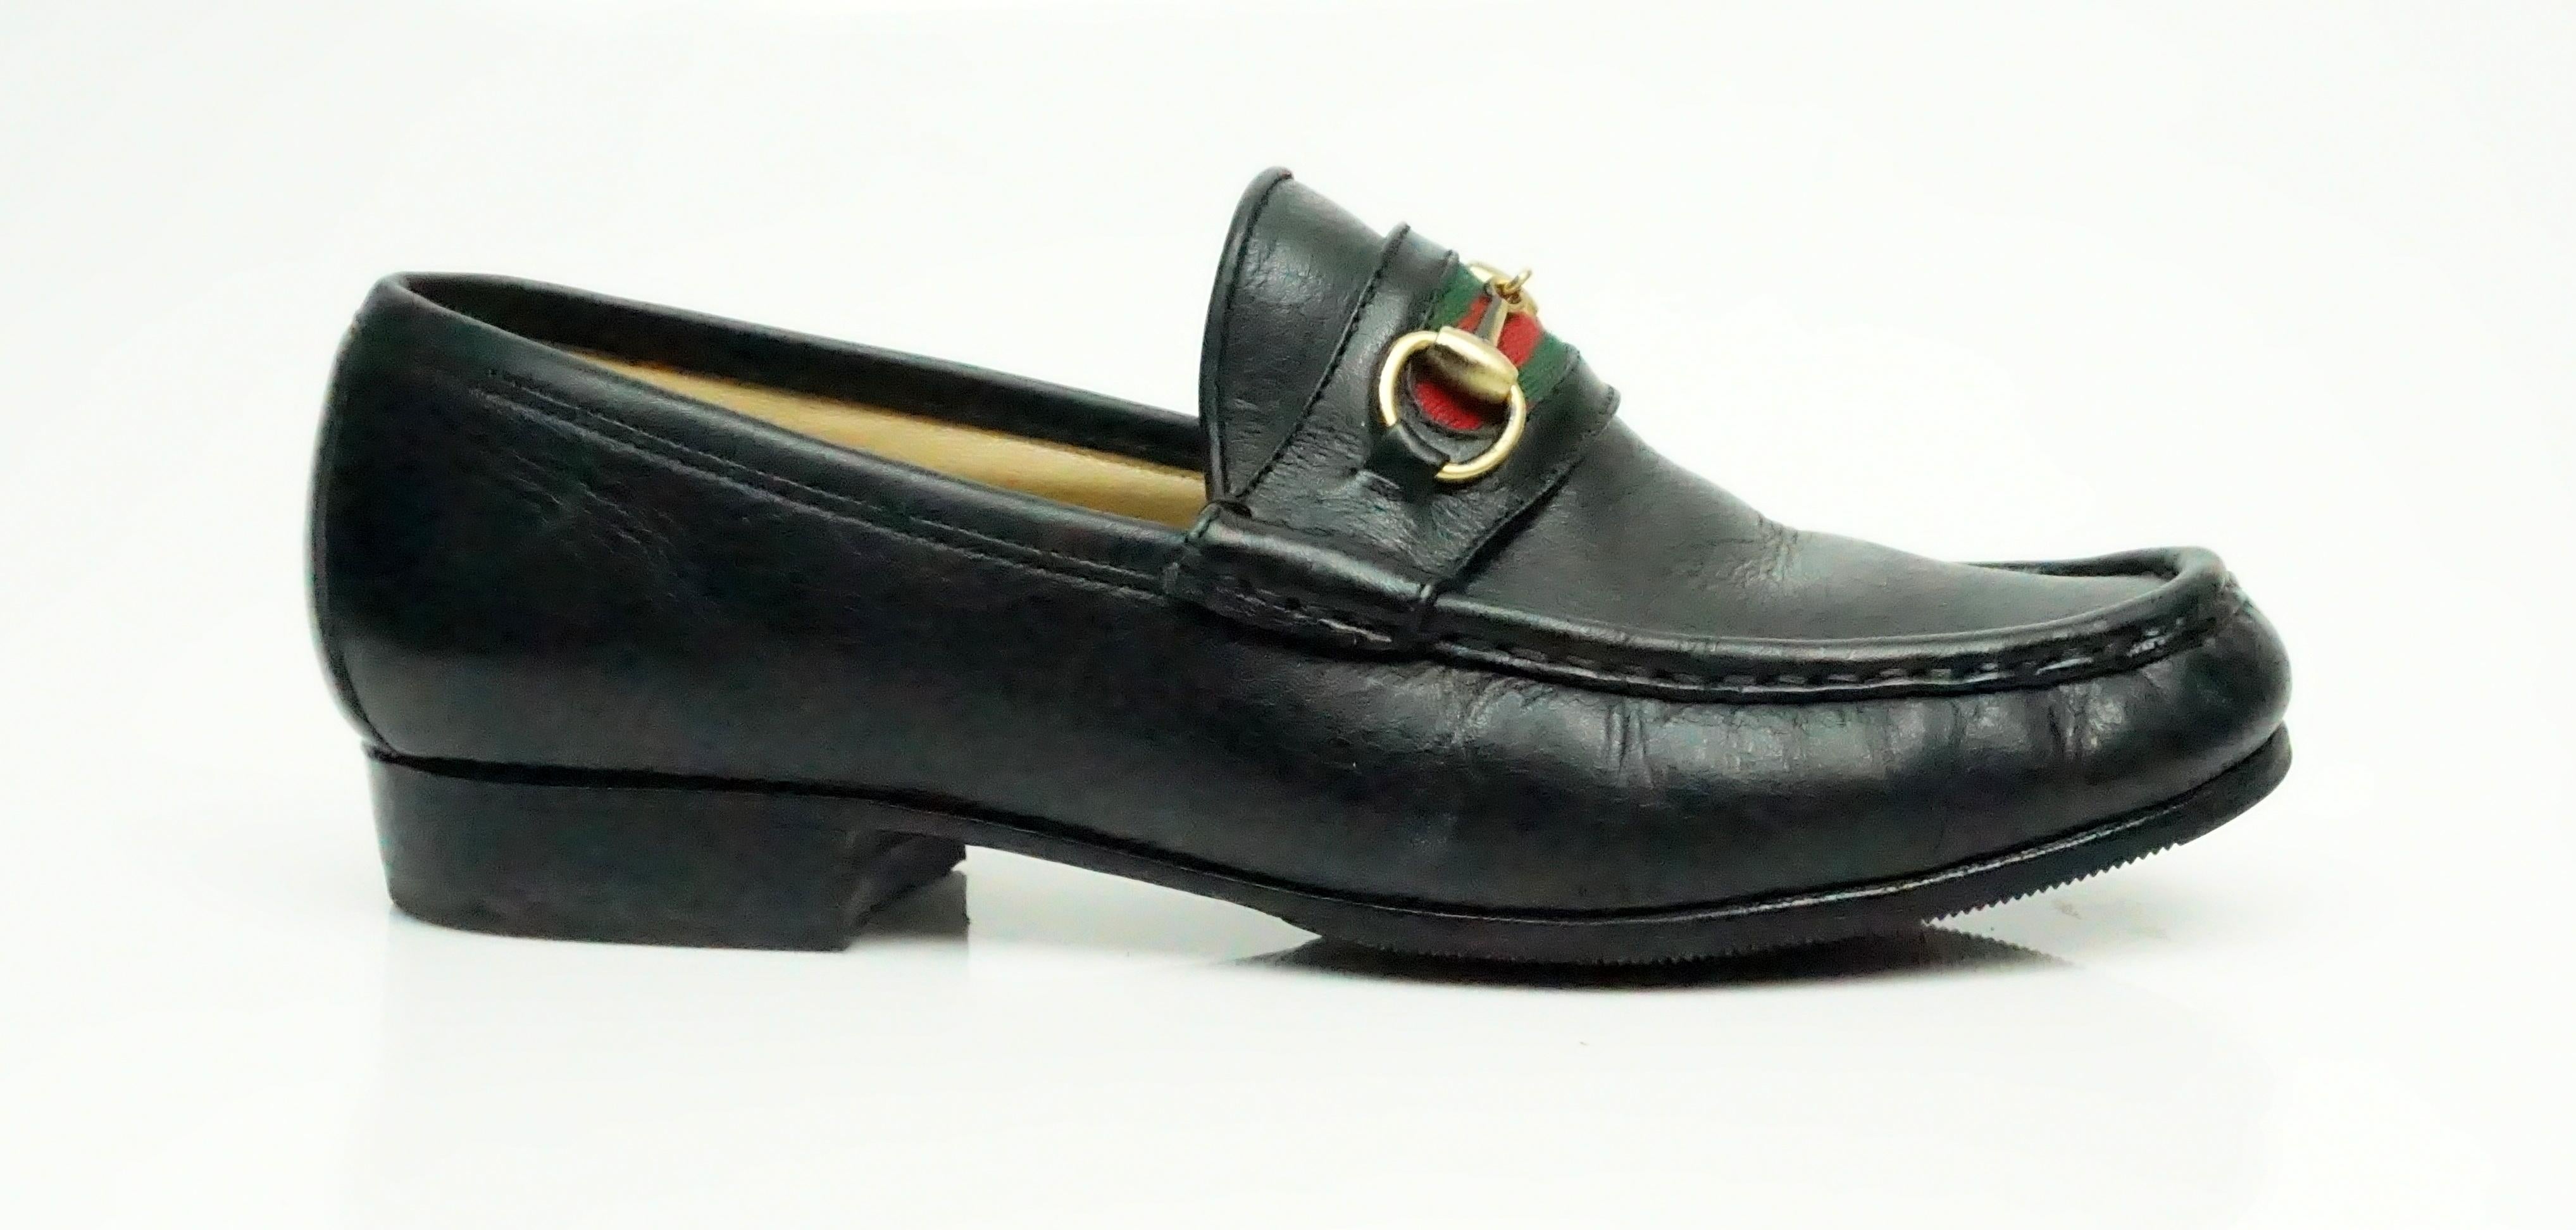 Gucci VIntage Black Leather Loafer with Red and Green Stripe - 6 Ce mocassin vintage en cuir de Gucci est en excellent état. La chaussure est très peu usée. La chaussure présente la bande rouge et verte classique de Gucci sur le devant de la